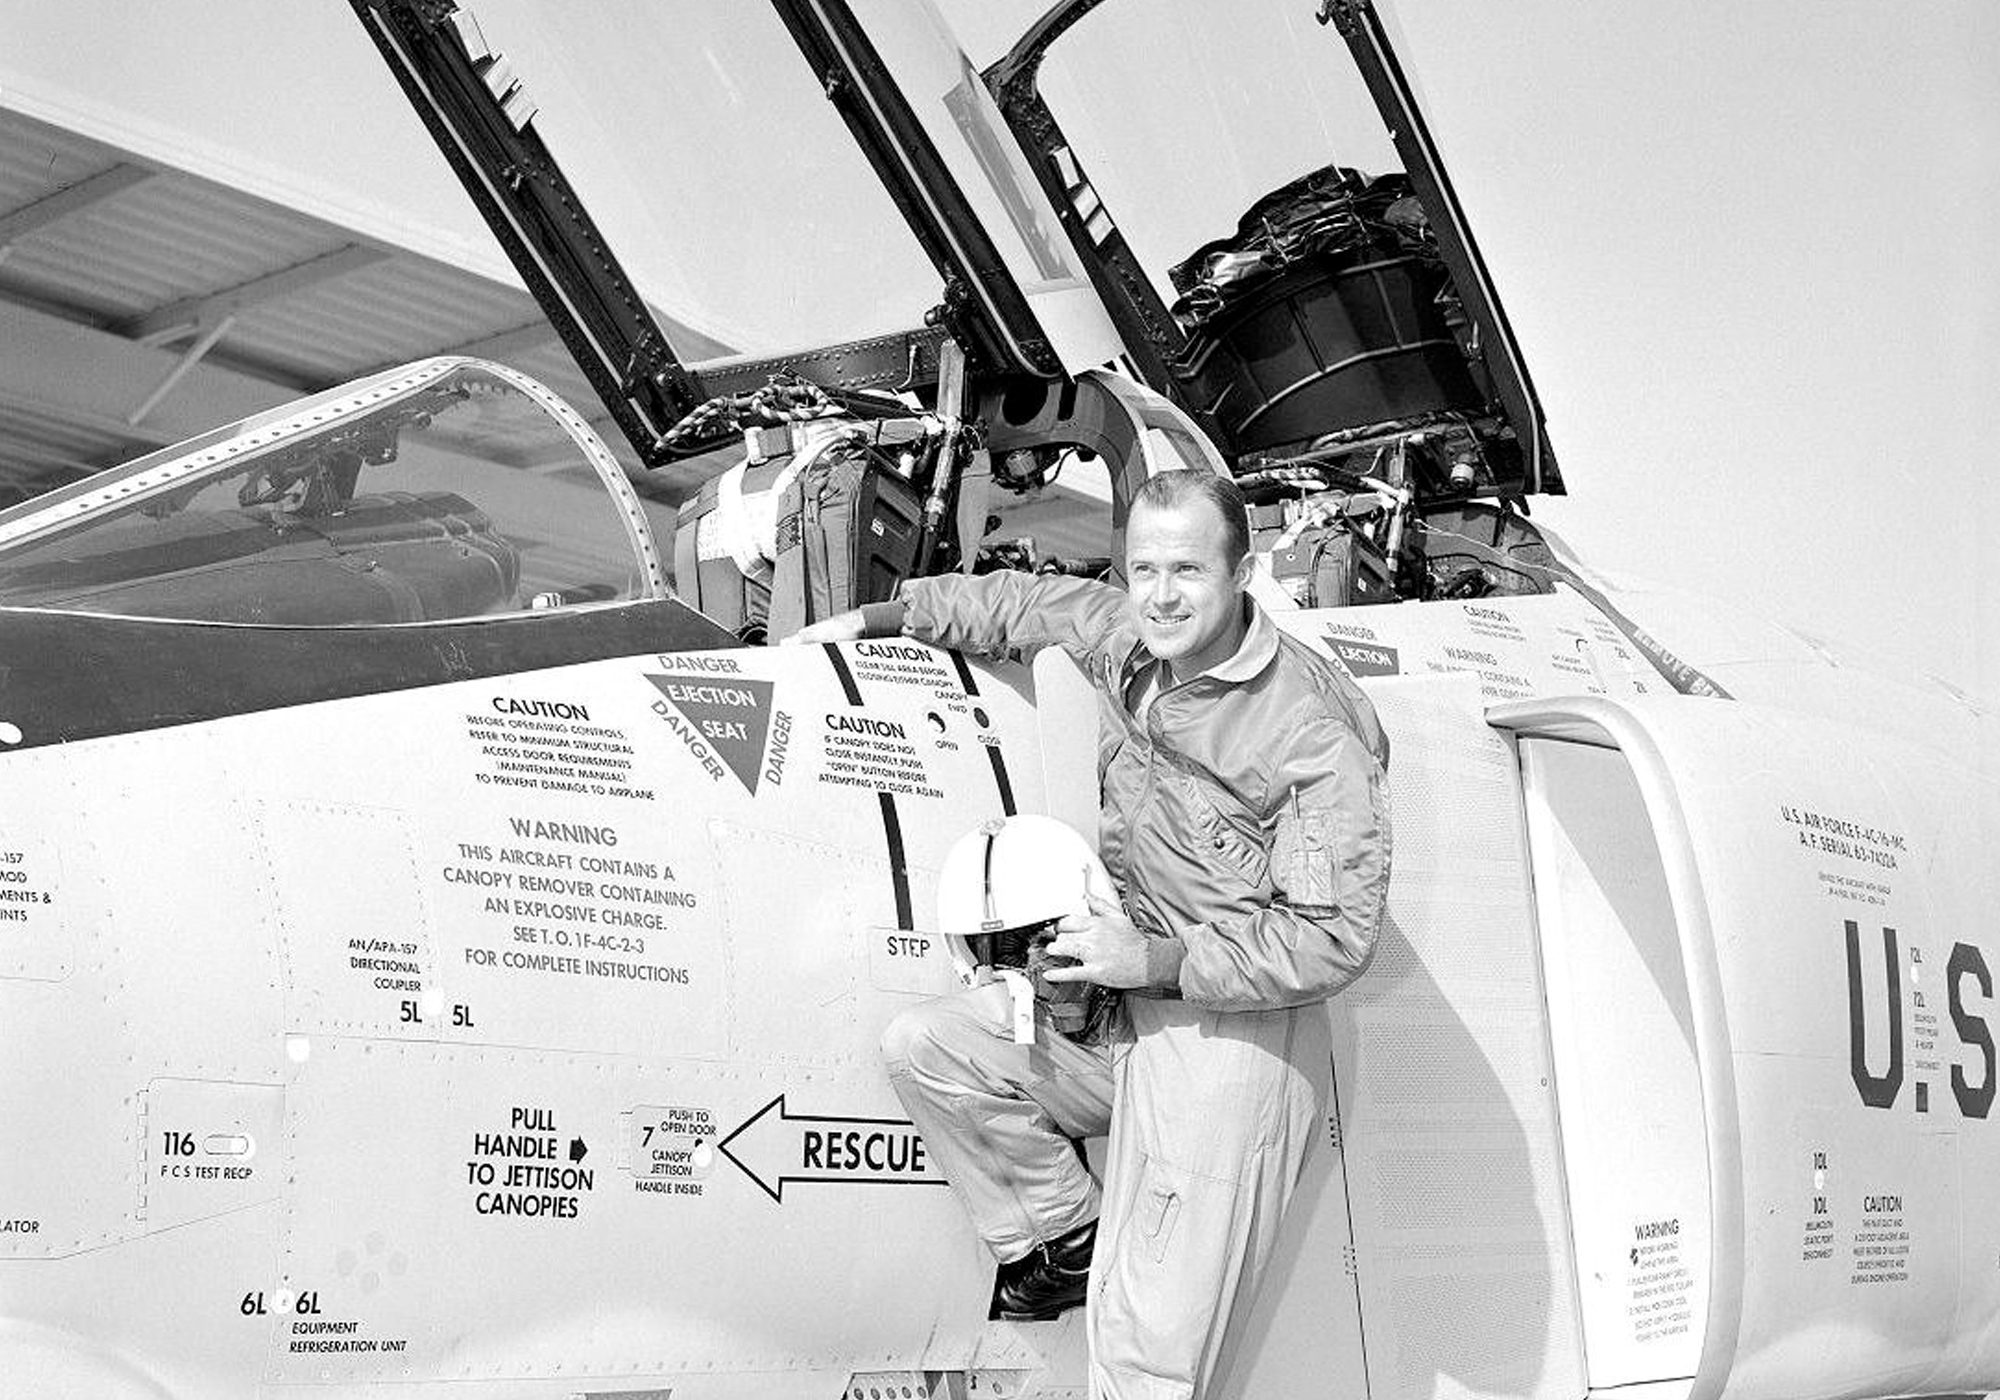 RF-4B PHANTOM II - IMC 1/72 scale